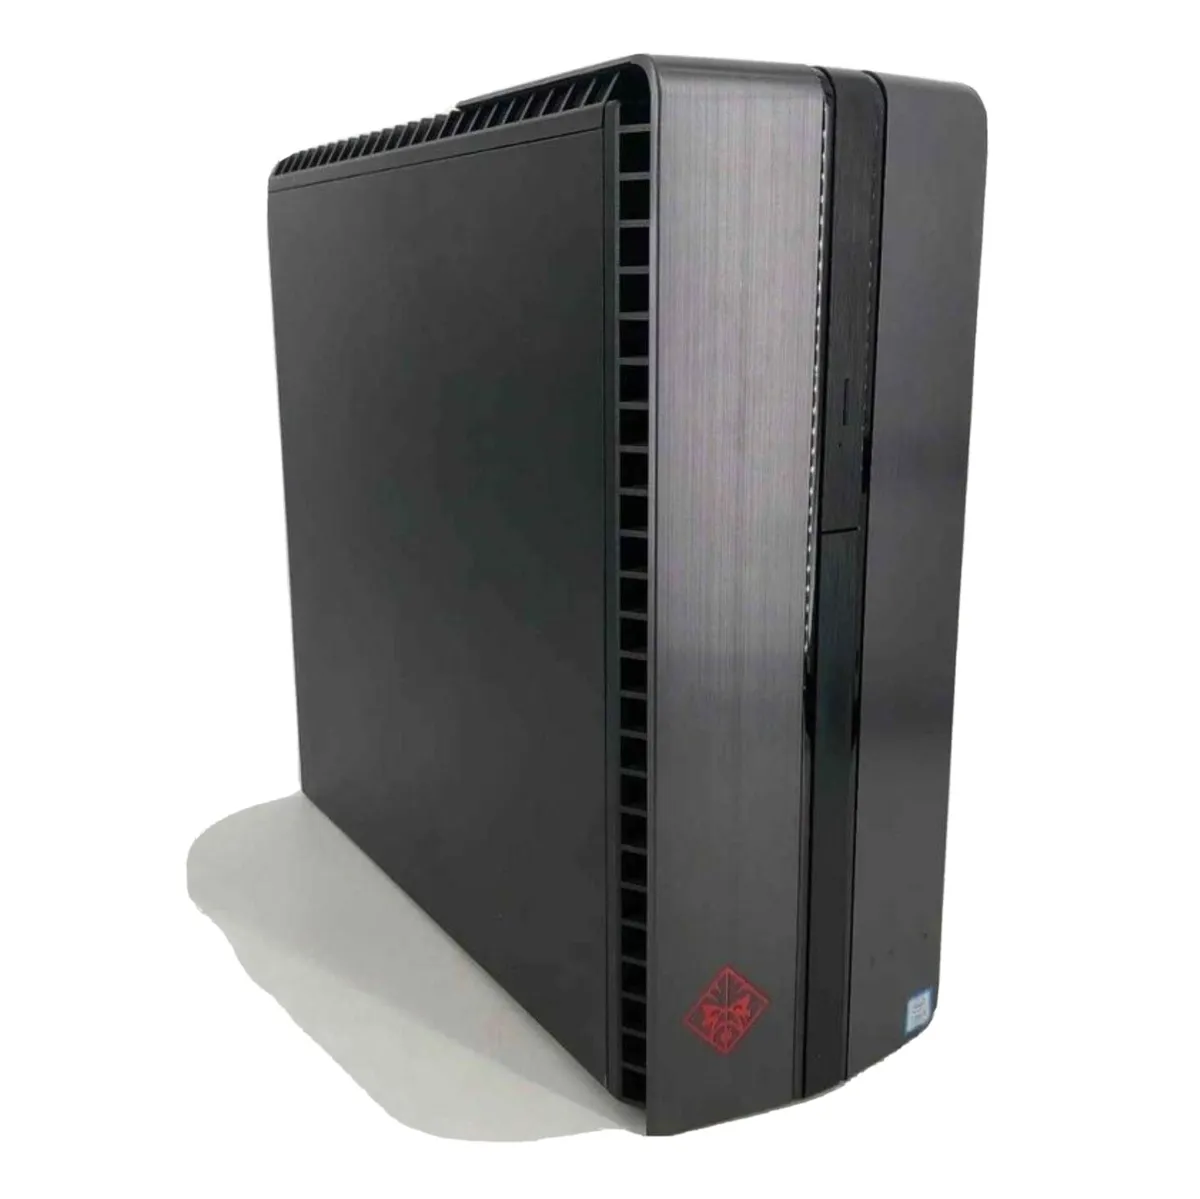 OMEN Desktop PC - 870-225nb